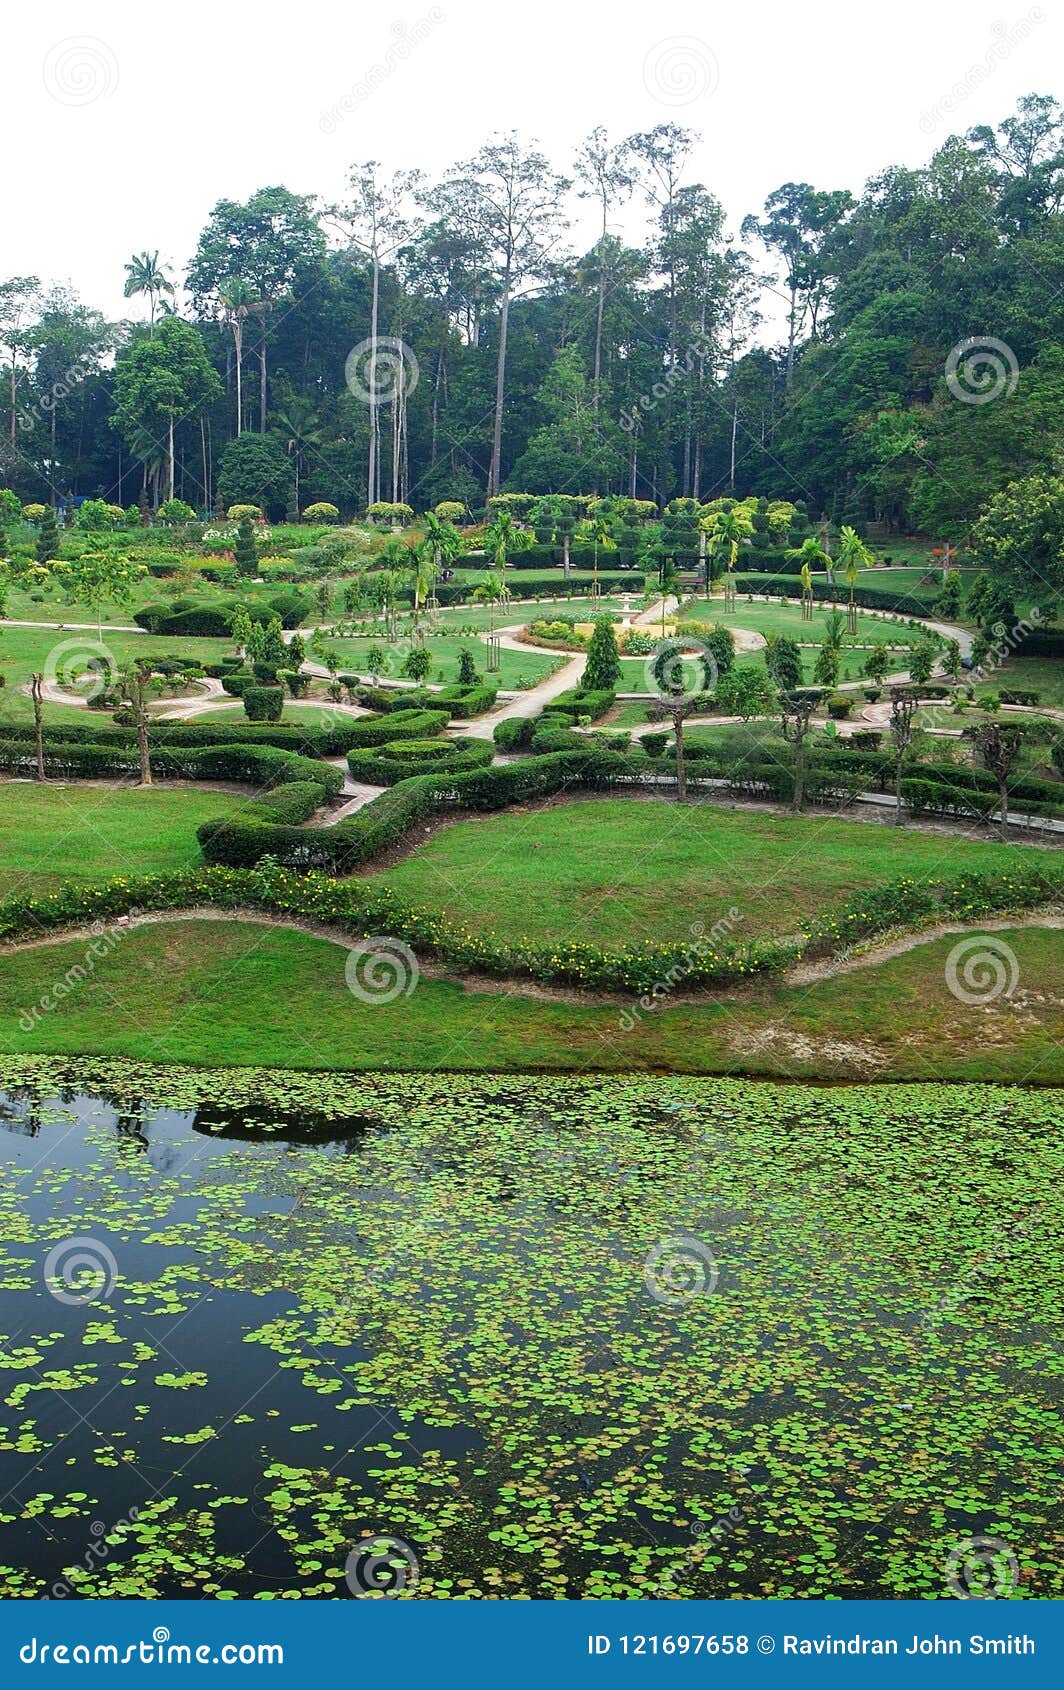 Taman Botani Shah Alam Basikal Memarik